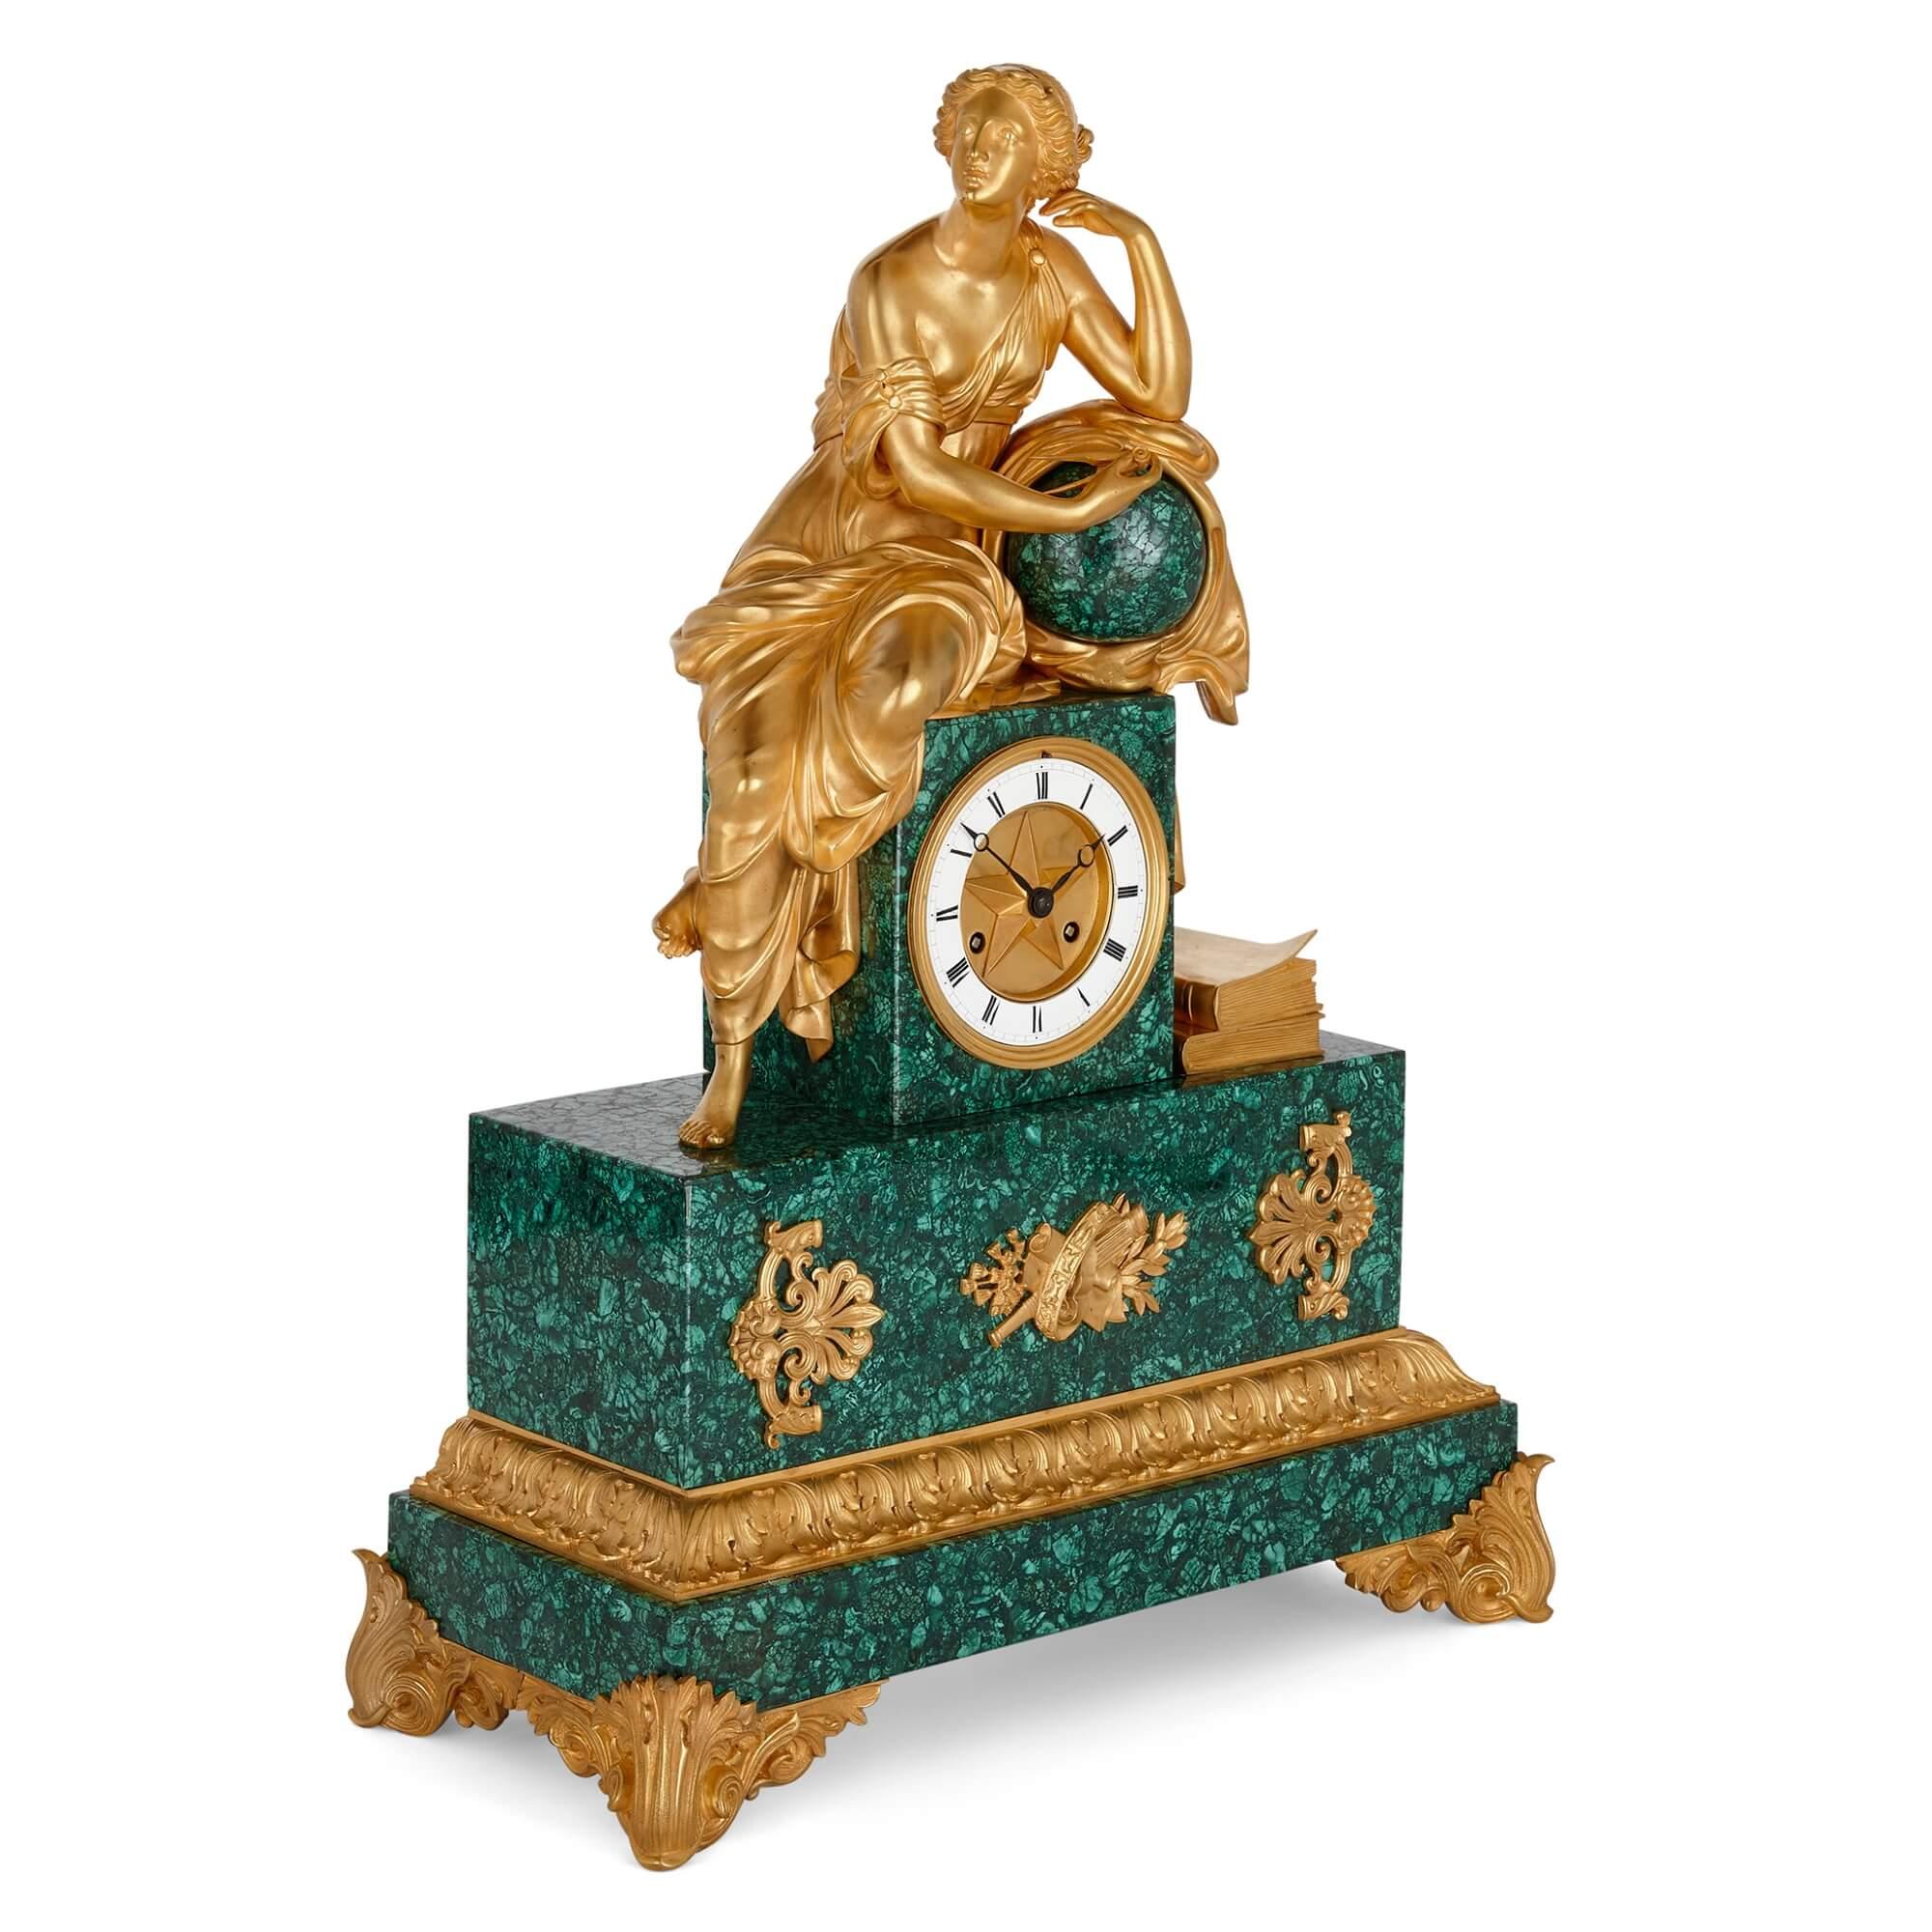 Pendule de cheminée sculpturale d'époque Charles X en bronze doré et malachite.
Français, vers 1830.
Mesures : hauteur 55cm, largeur 40cm, profondeur 18cm.

Surmontée d'une jeune fille assise, en robe, avec des livres à ses pieds, sur un cadran